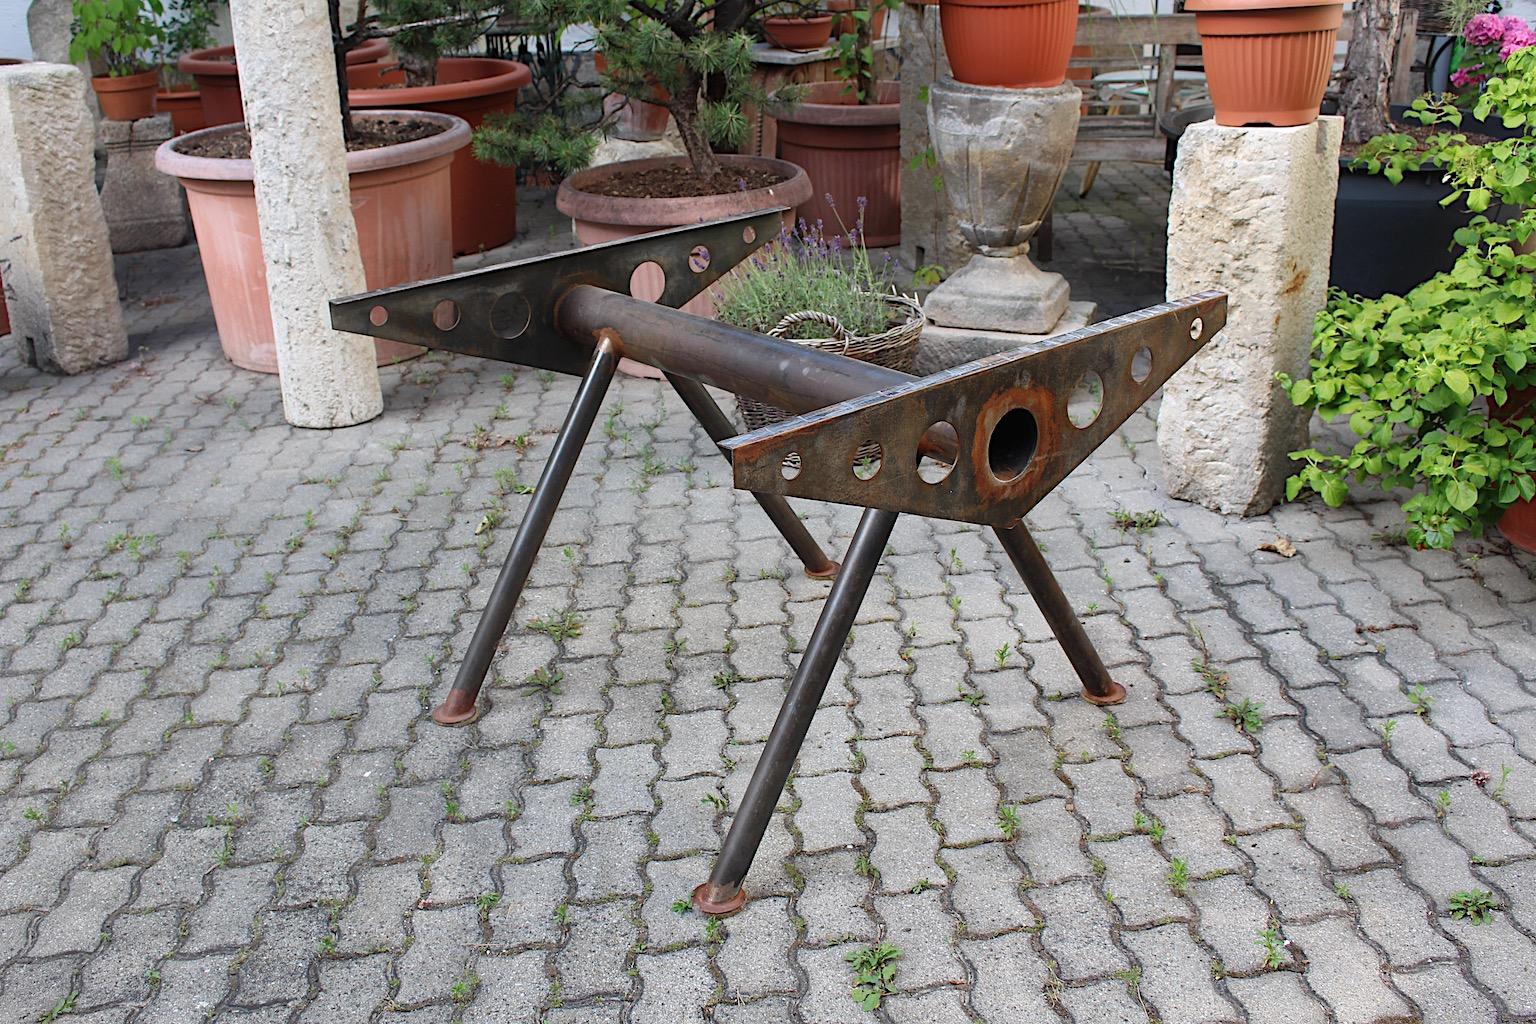 Industrie-Stil Vintage Metall Mitte Tabelle Basis oder Tabelle Stil Jean Prouve 1980er Jahre.
Ein hochwertiges Tischgestell im Industriestil oder ein Tisch im Metallstil von Jean Prouve aus den 1980er Jahren.
Dieser außergewöhnliche und